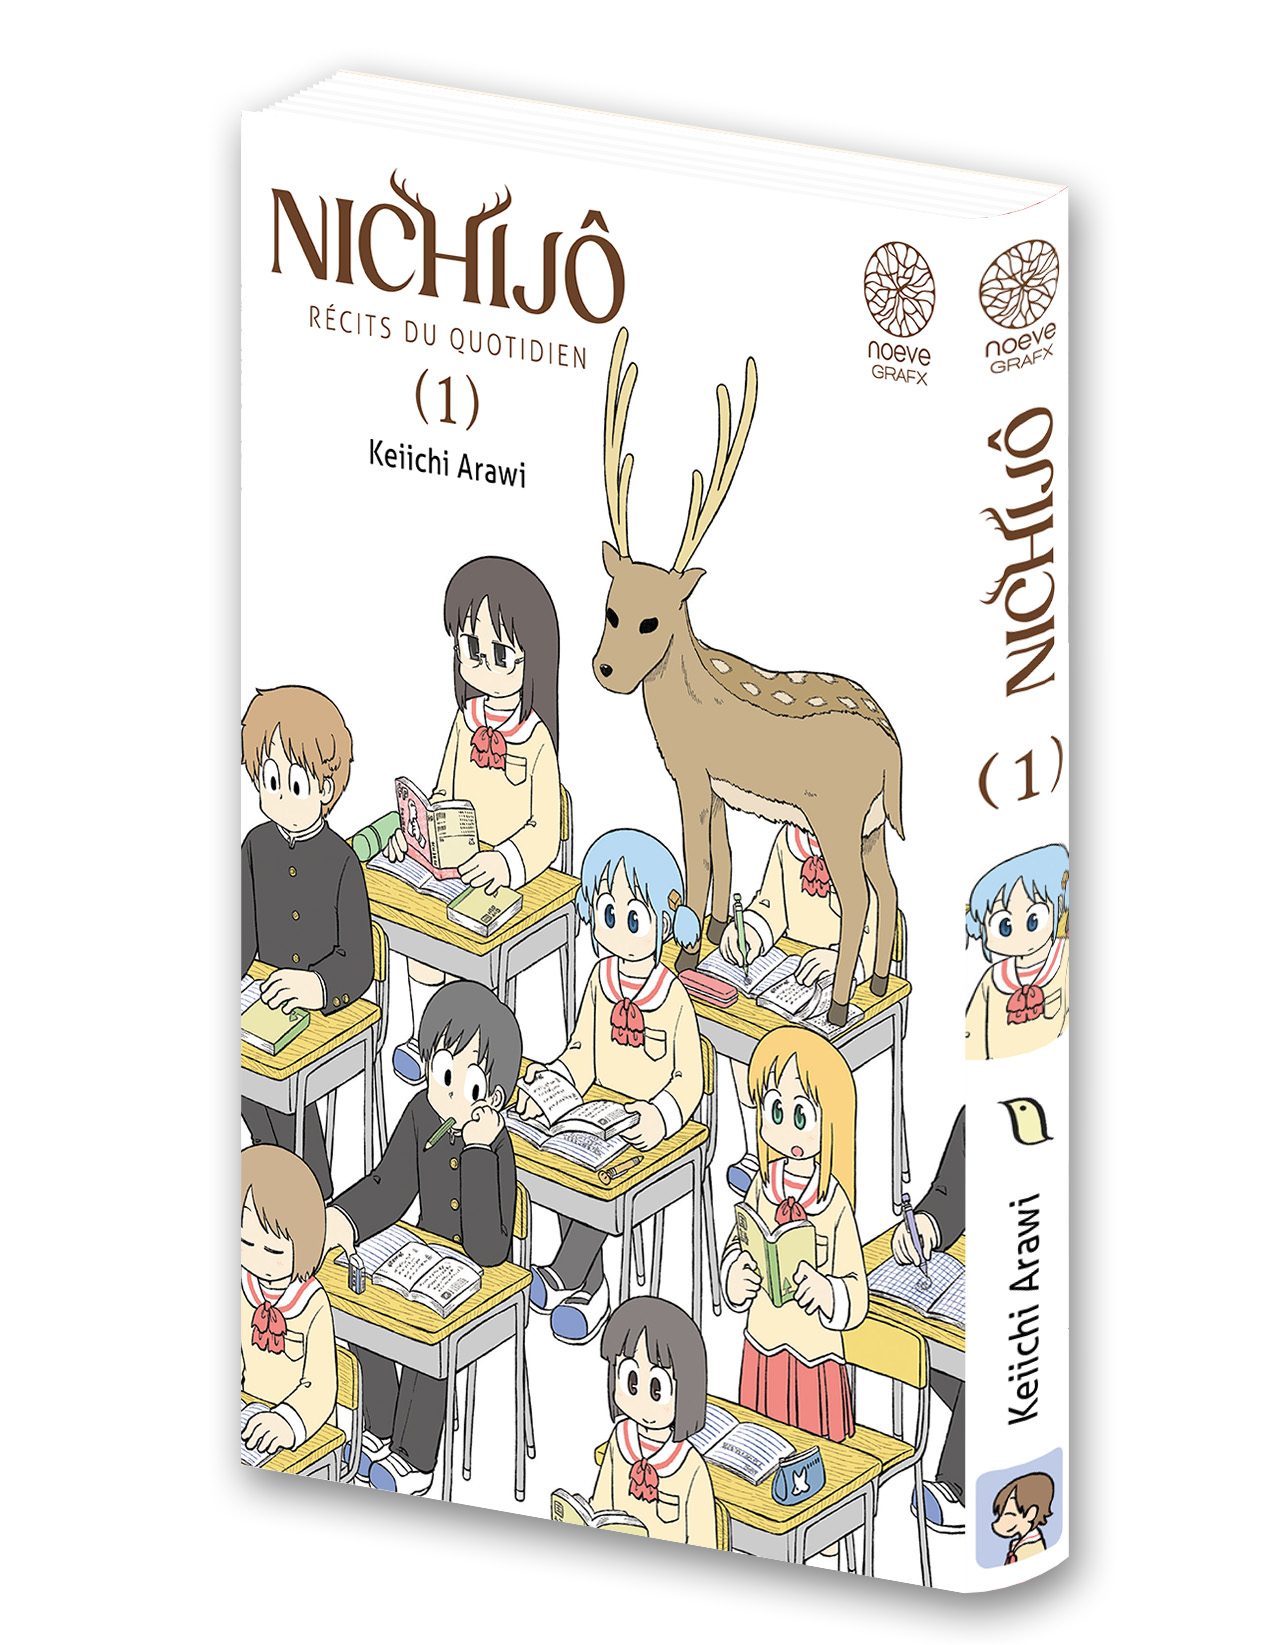 Visuel 3D du manga Nichijô